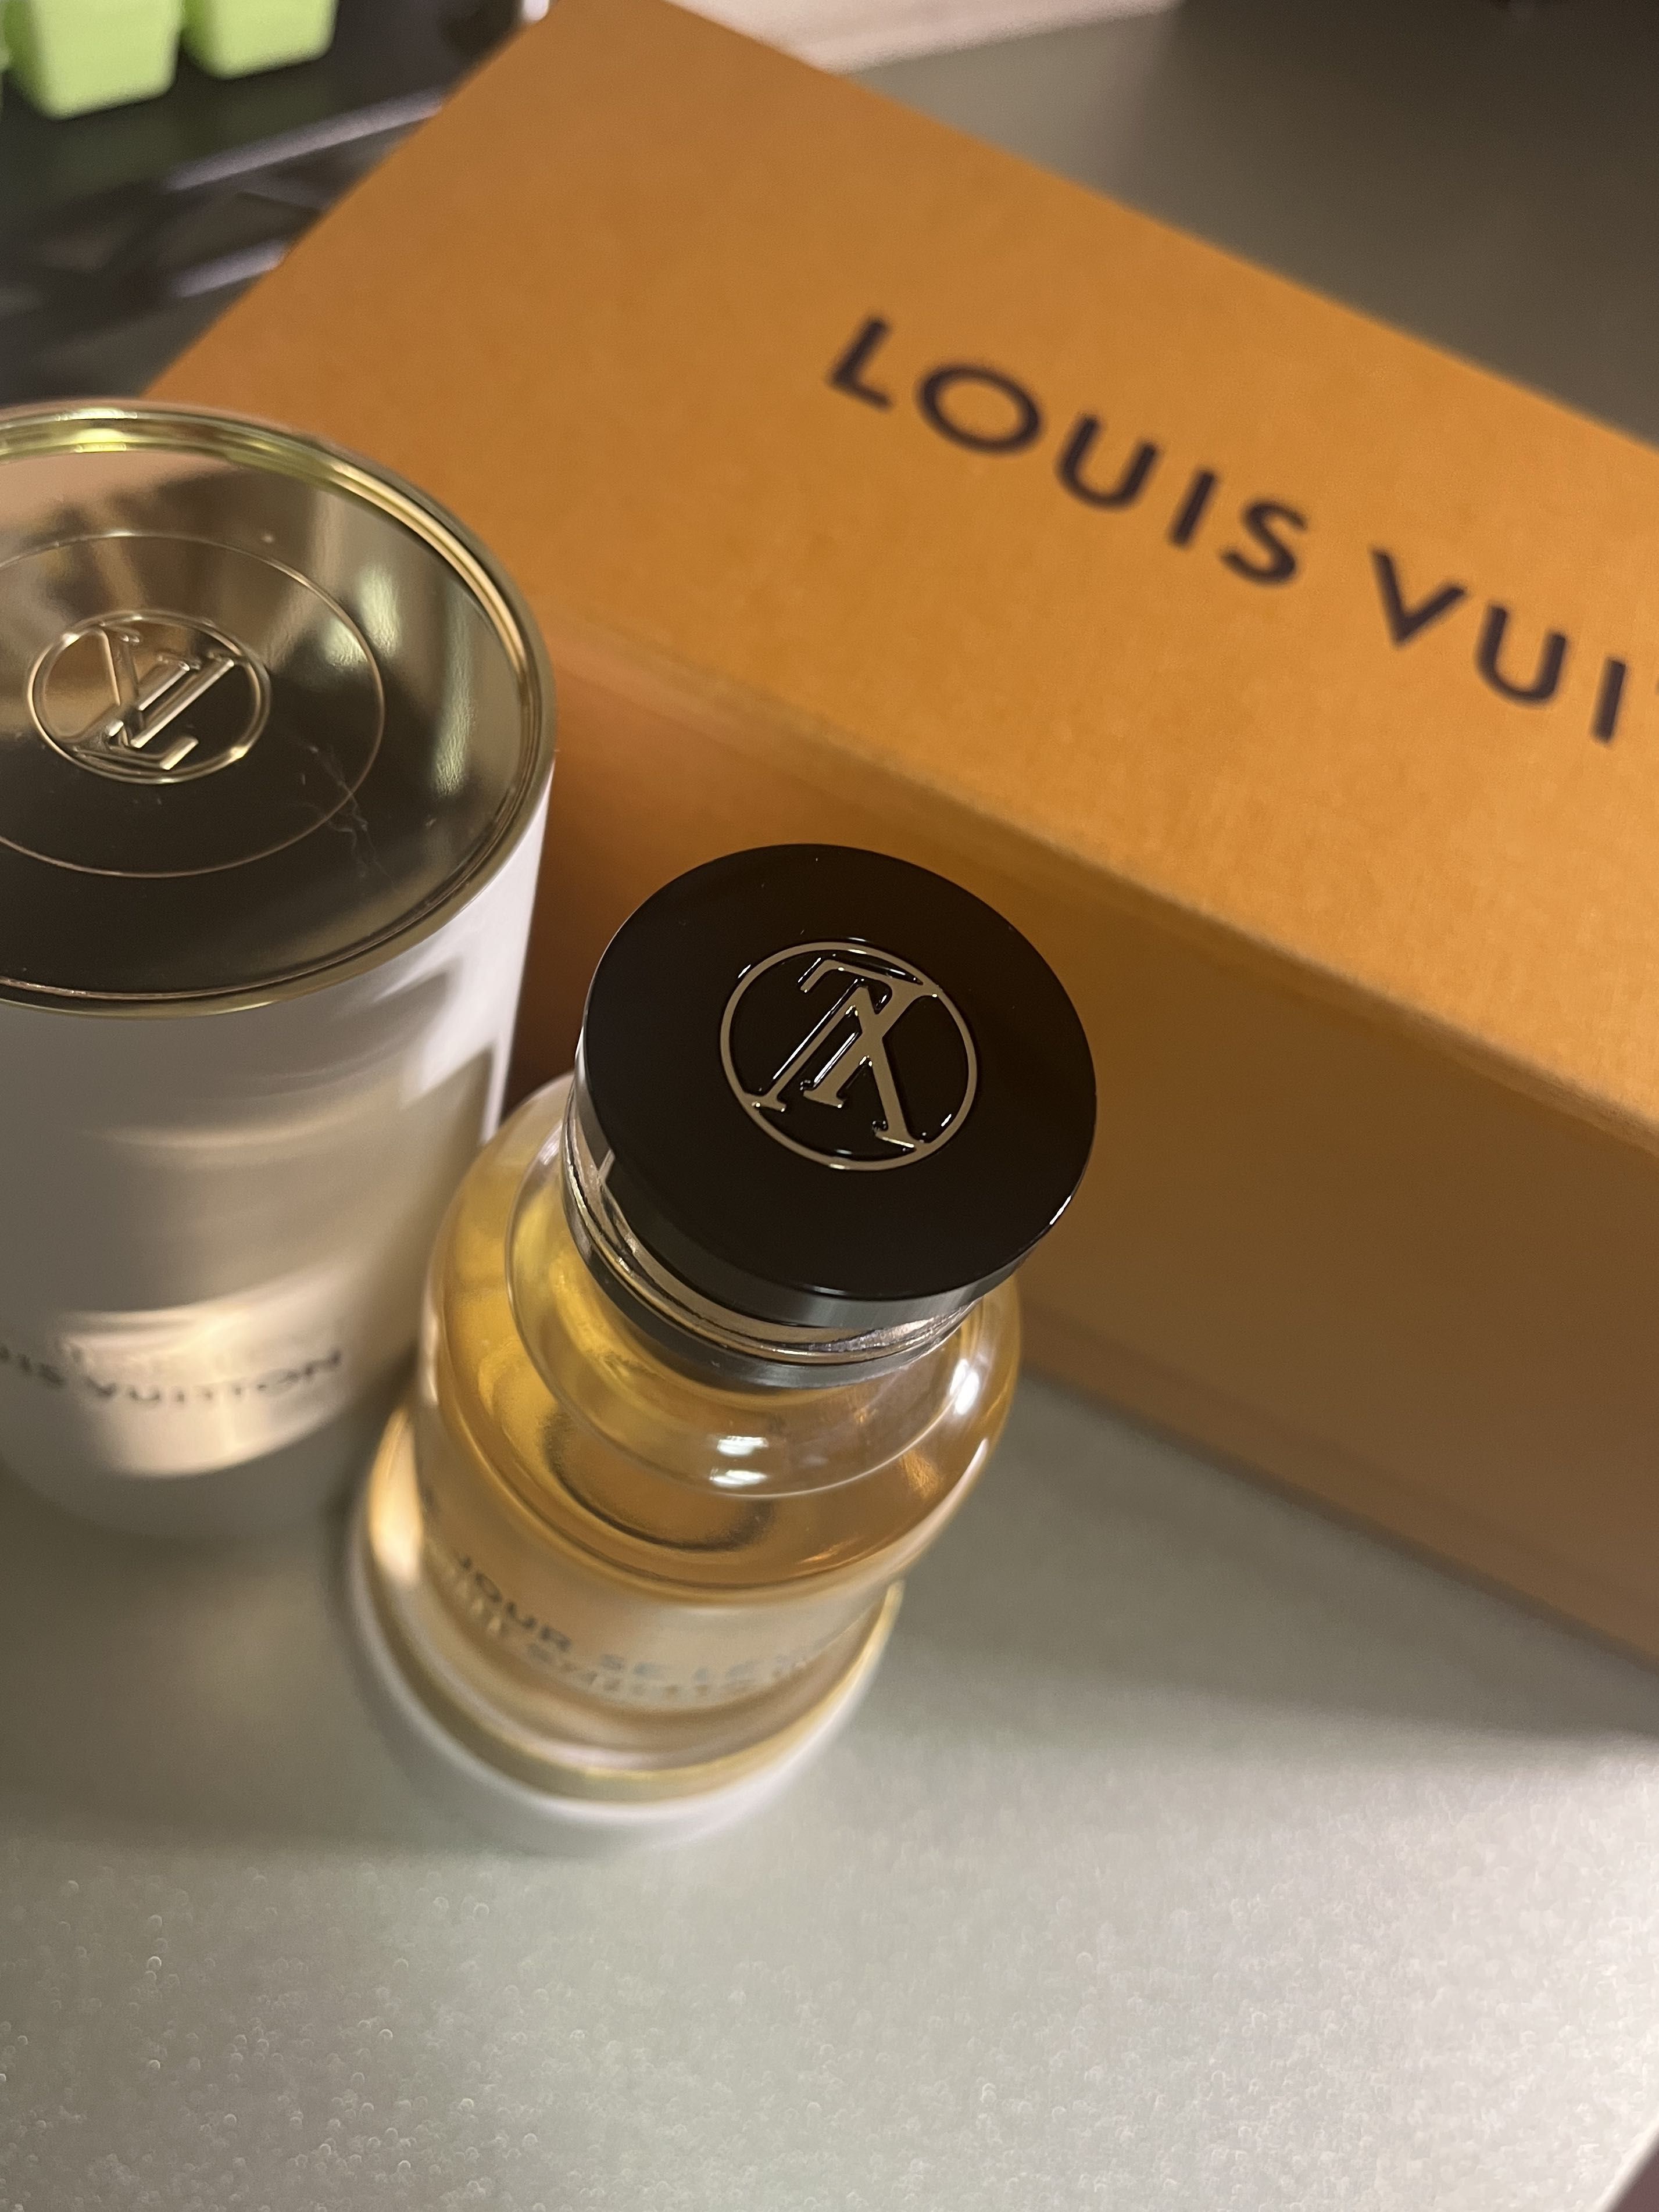 Louis Vuitton Le Jour SE Leve Eau de Parfum 3.4 oz/100 ml Spray.